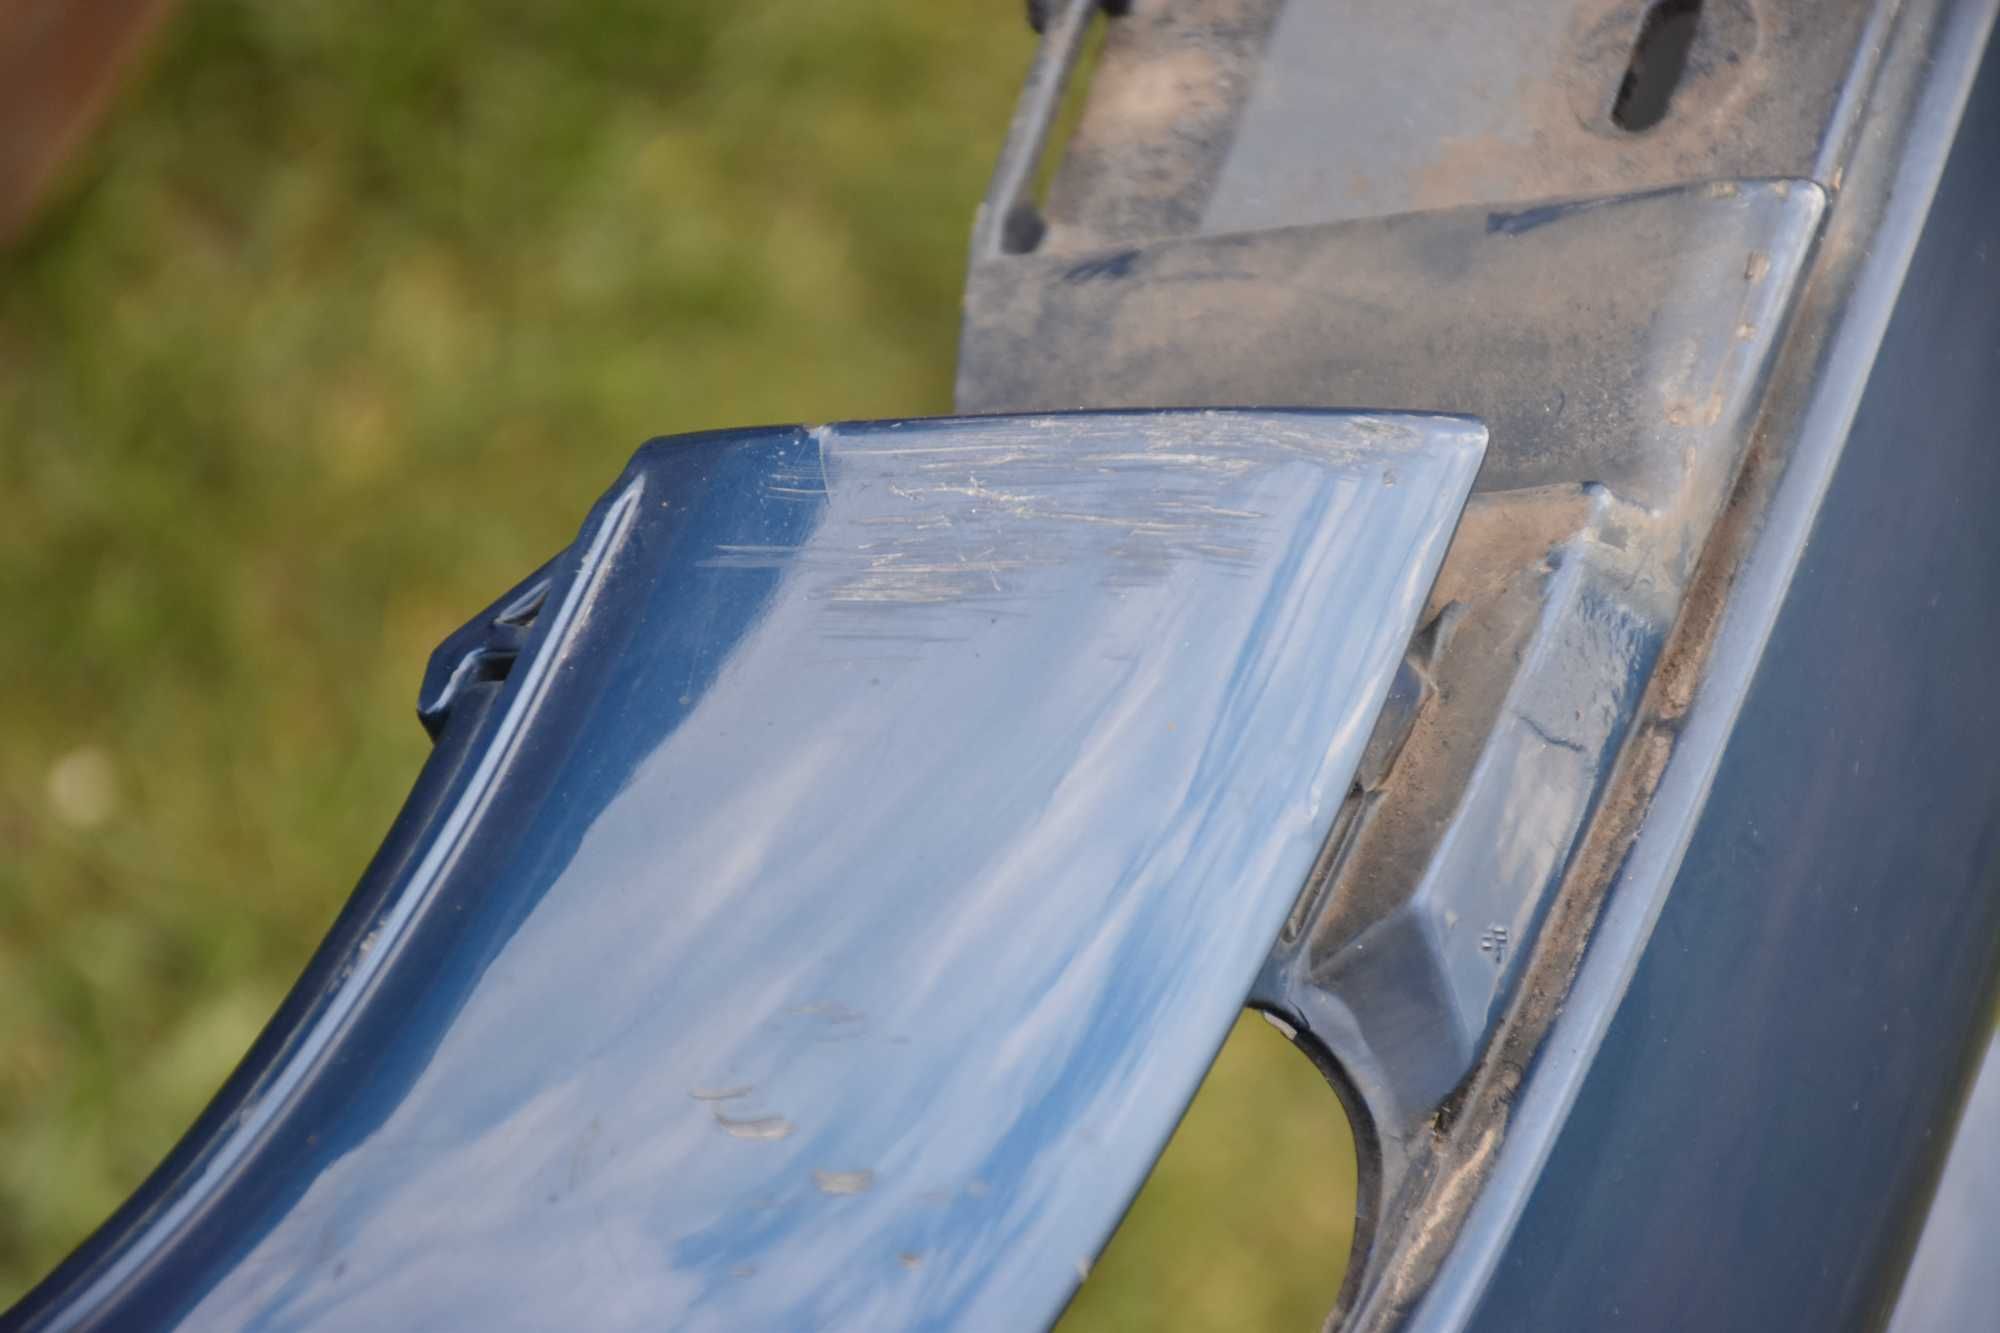 Zderzak tył tylny BMW E39 touring kombi pod hak Topasblau 364 zaślepka